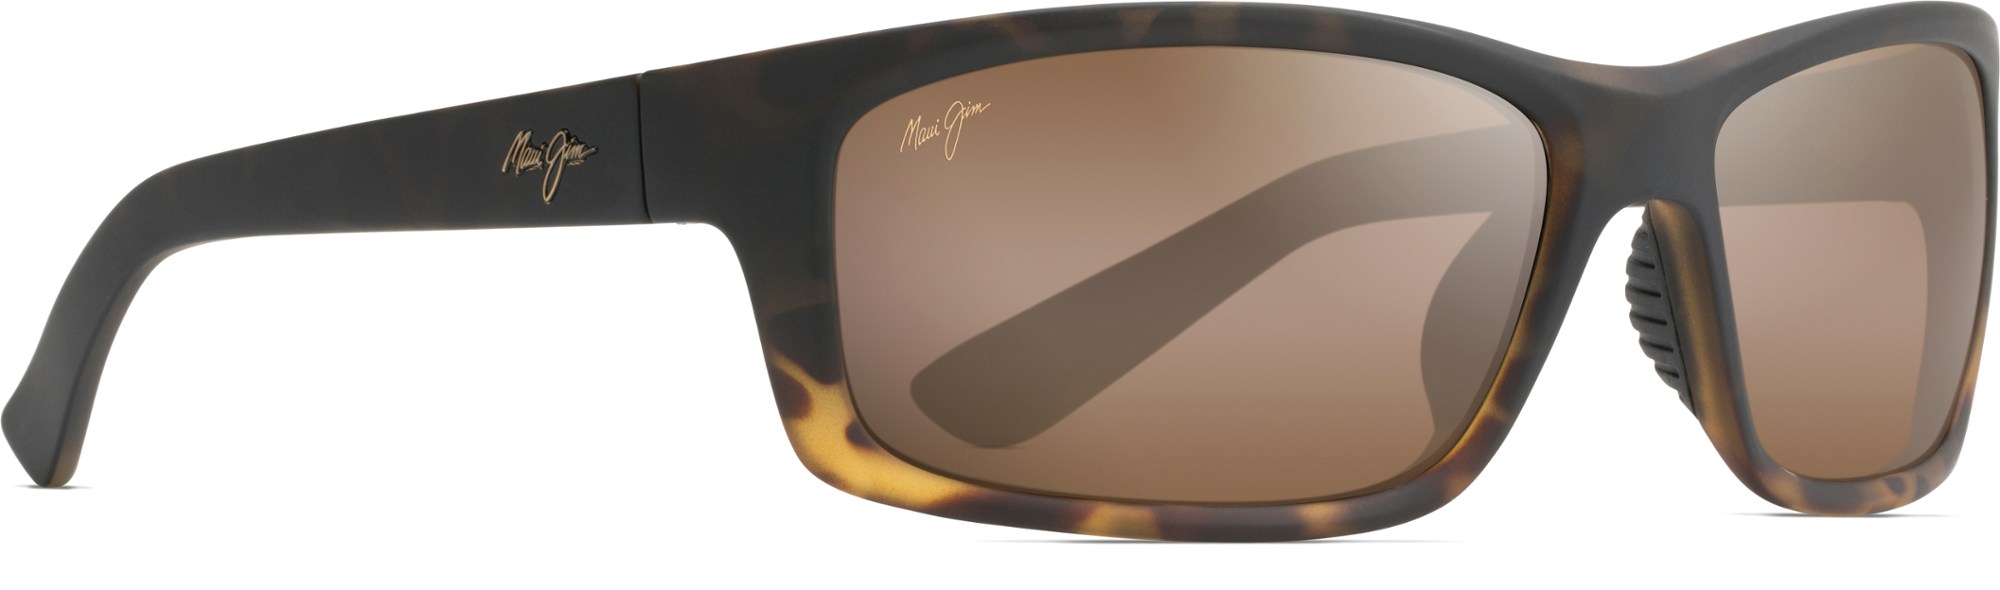 Поляризованные солнцезащитные очки Kanaio Coast Maui Jim, коричневый солнцезащитные очки kanaio coast maui jim цвет matte soft black white blue